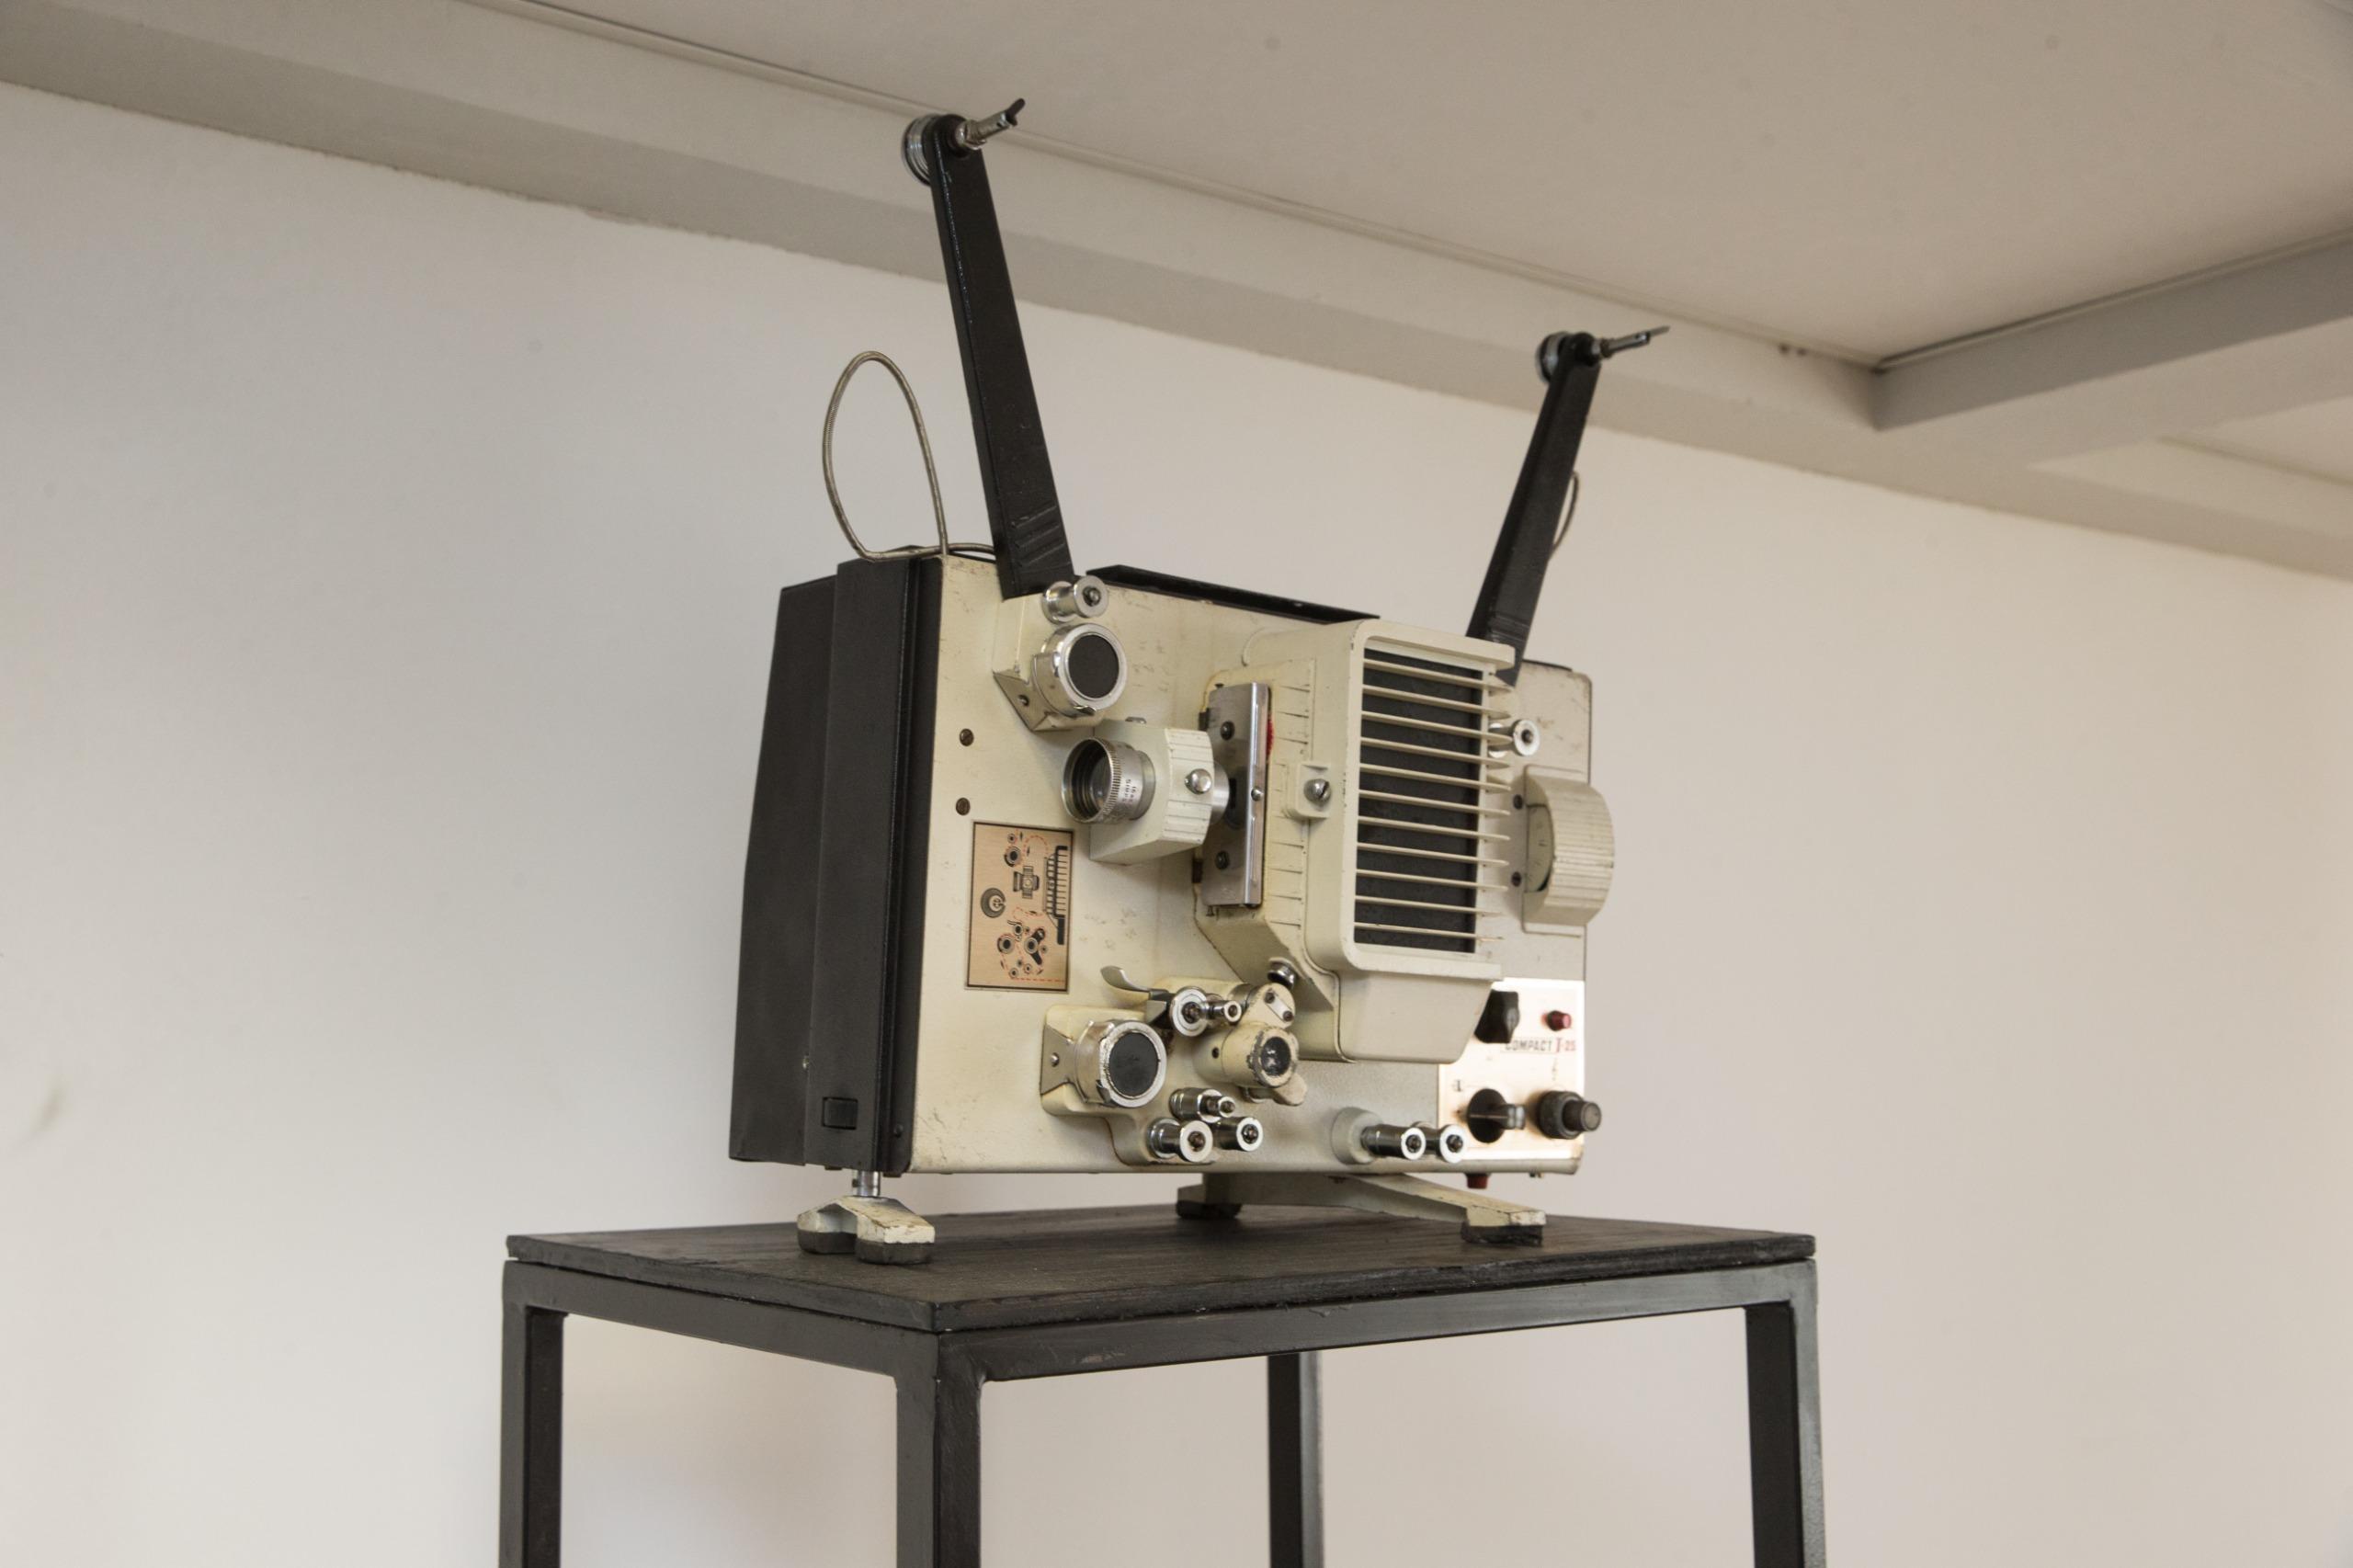 Itens históricos que eram usados no Cine Nazaré, como este projetor de 16 mm, compõem acervo da Sala Seu Vavá